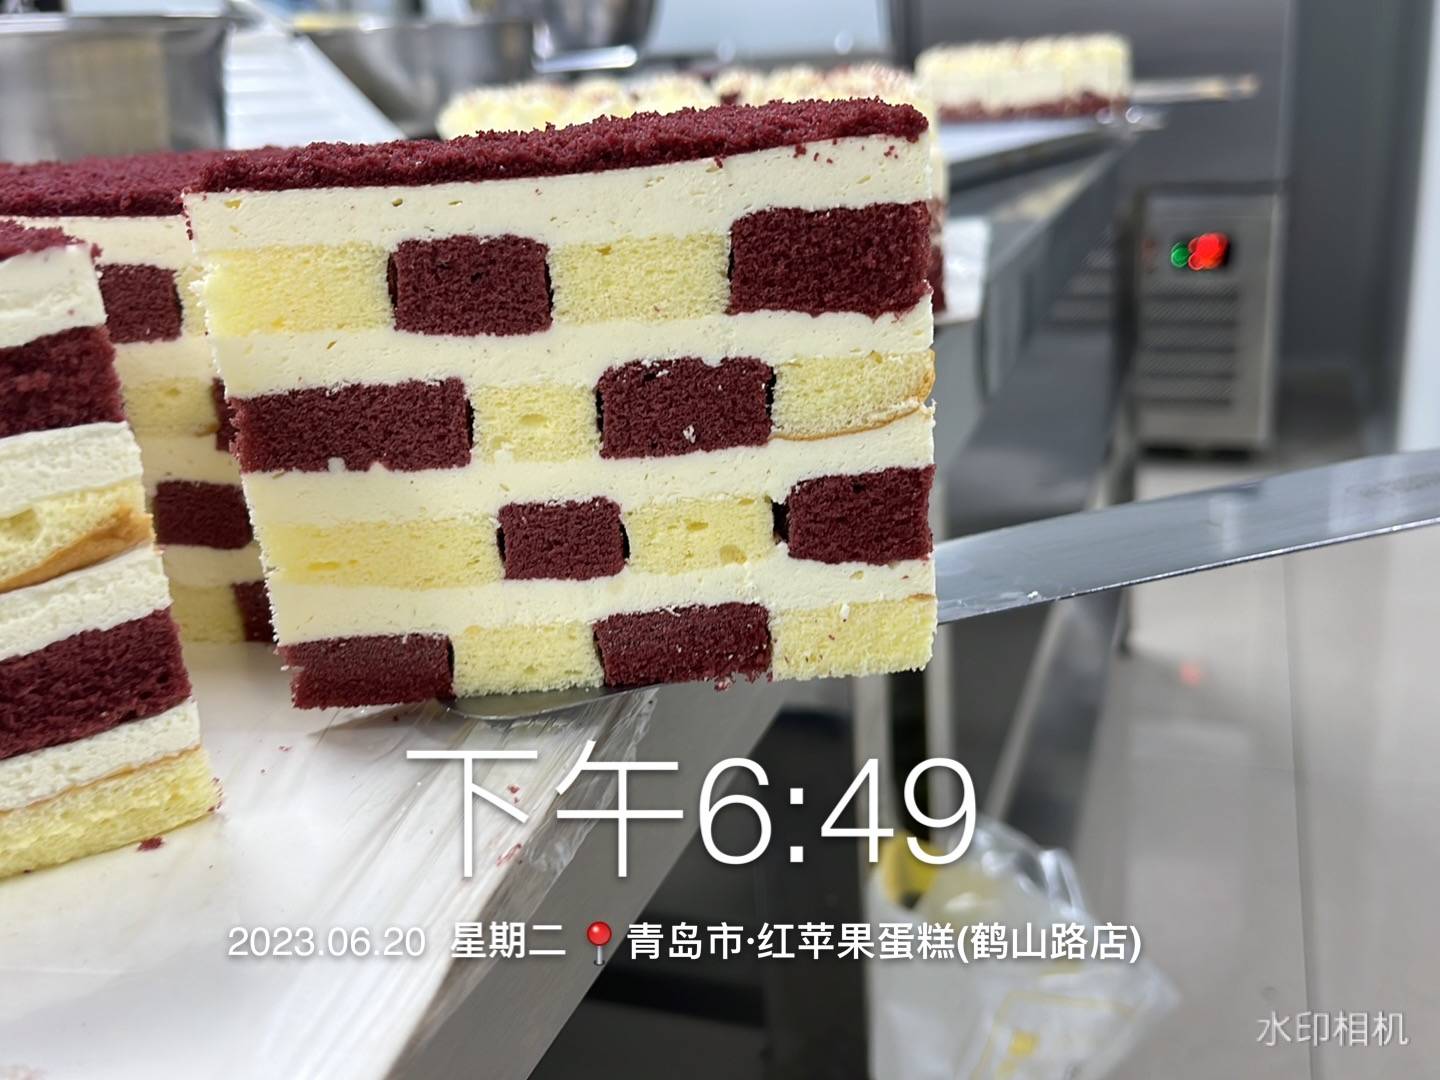 Высокоскоростная машина для производства круглых порций торта